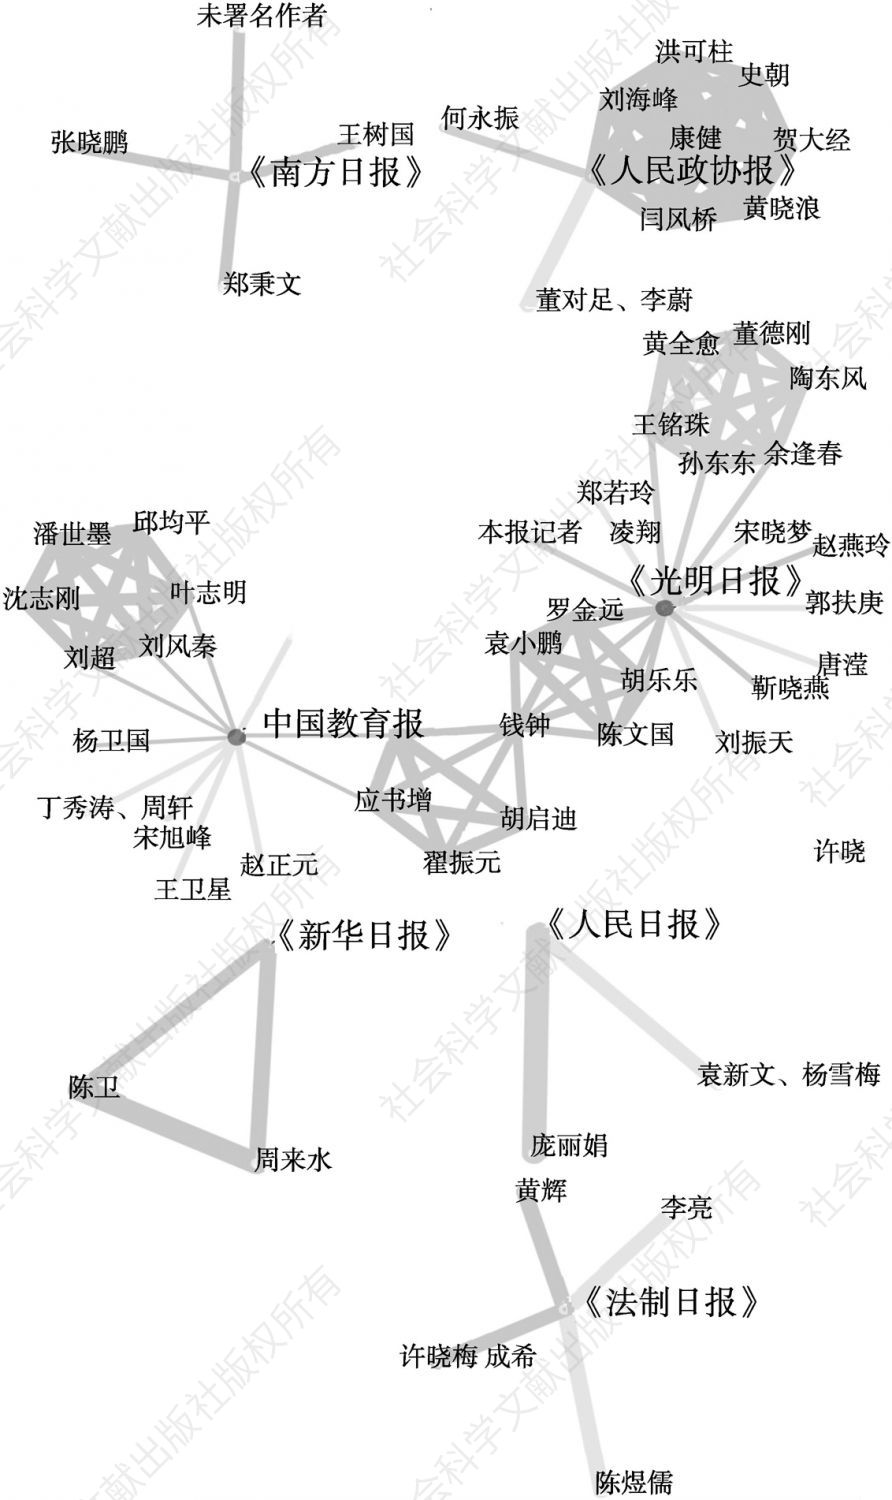 图3 2000～2008年按照报刊类型聚类之后的信息源共现网络图